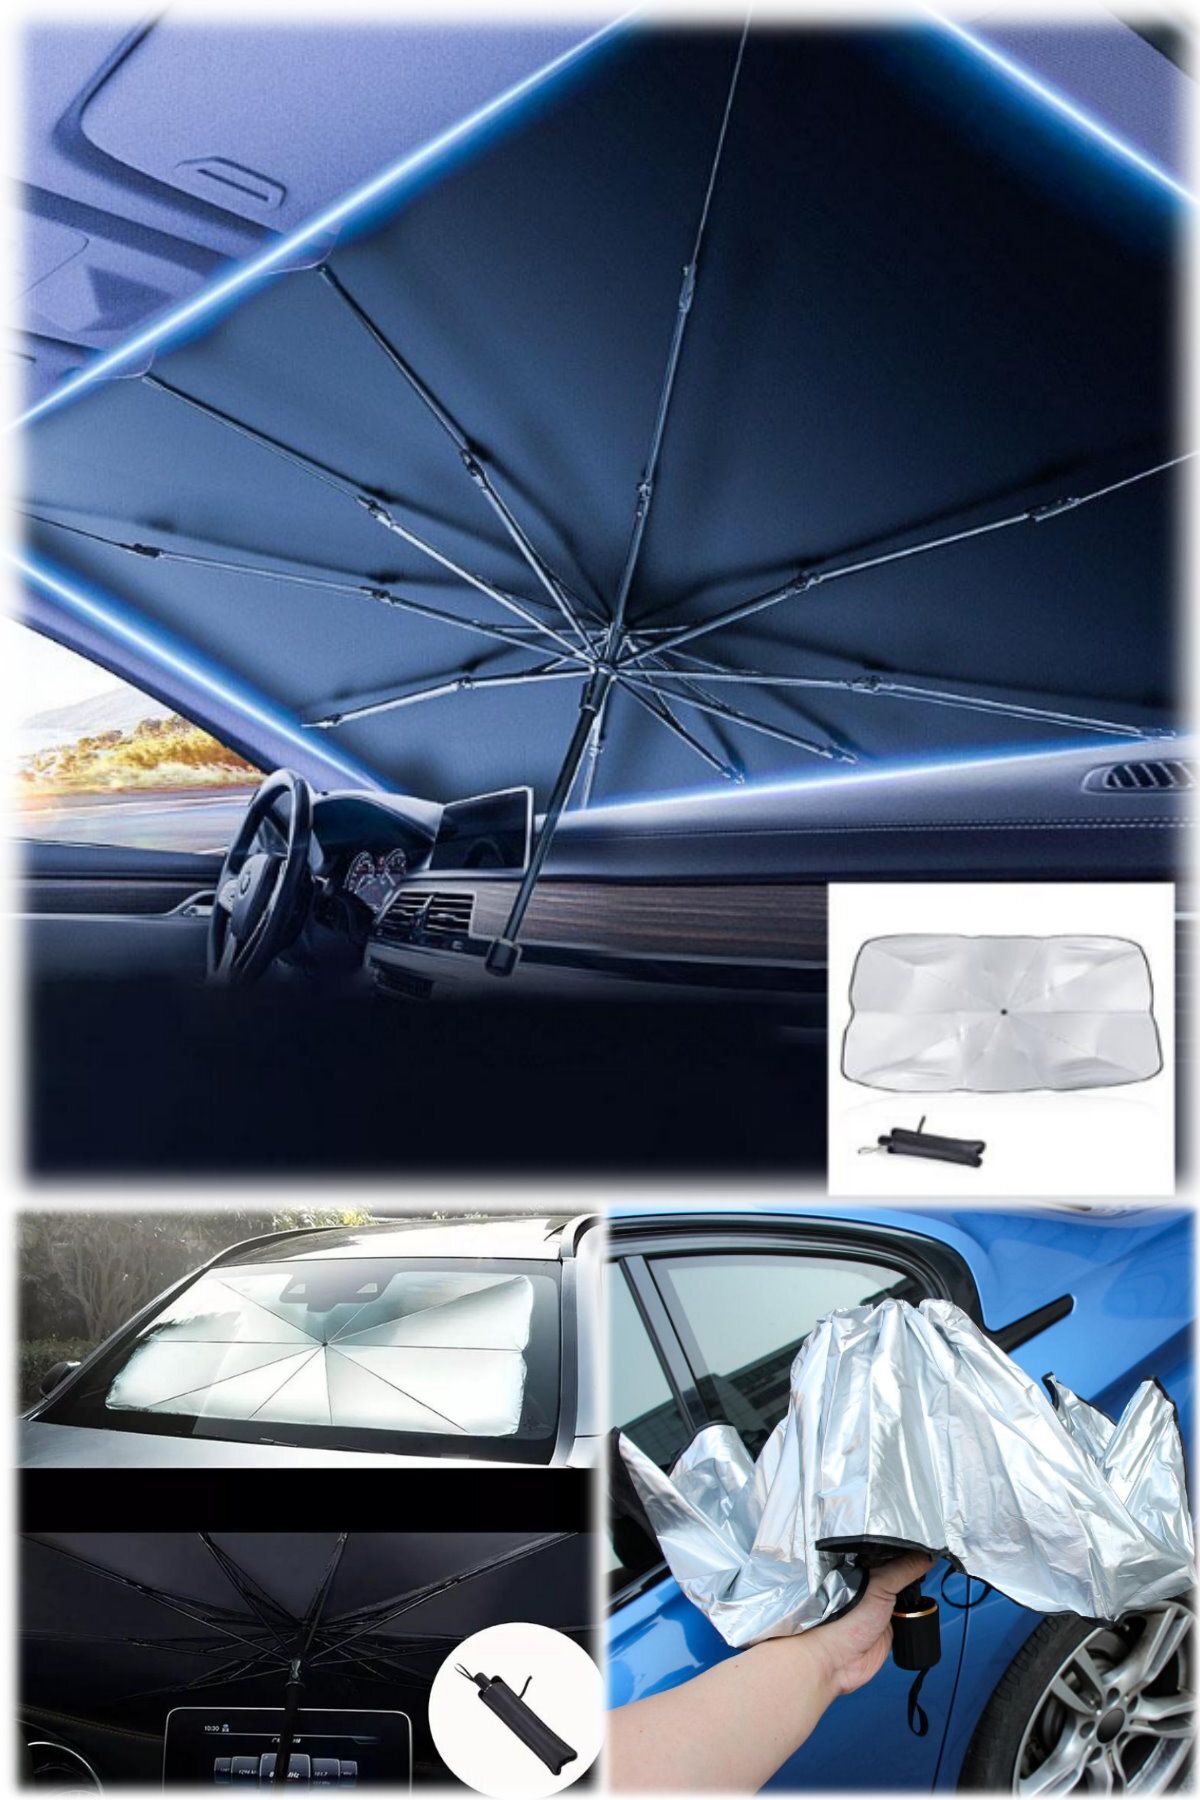 Utelips 130x75cm Araba Güneş Gölgesi Koruma Şemsiye Otomatik Ön Cam Güneşlik Kapakları Araba İç Ön Cam Perde